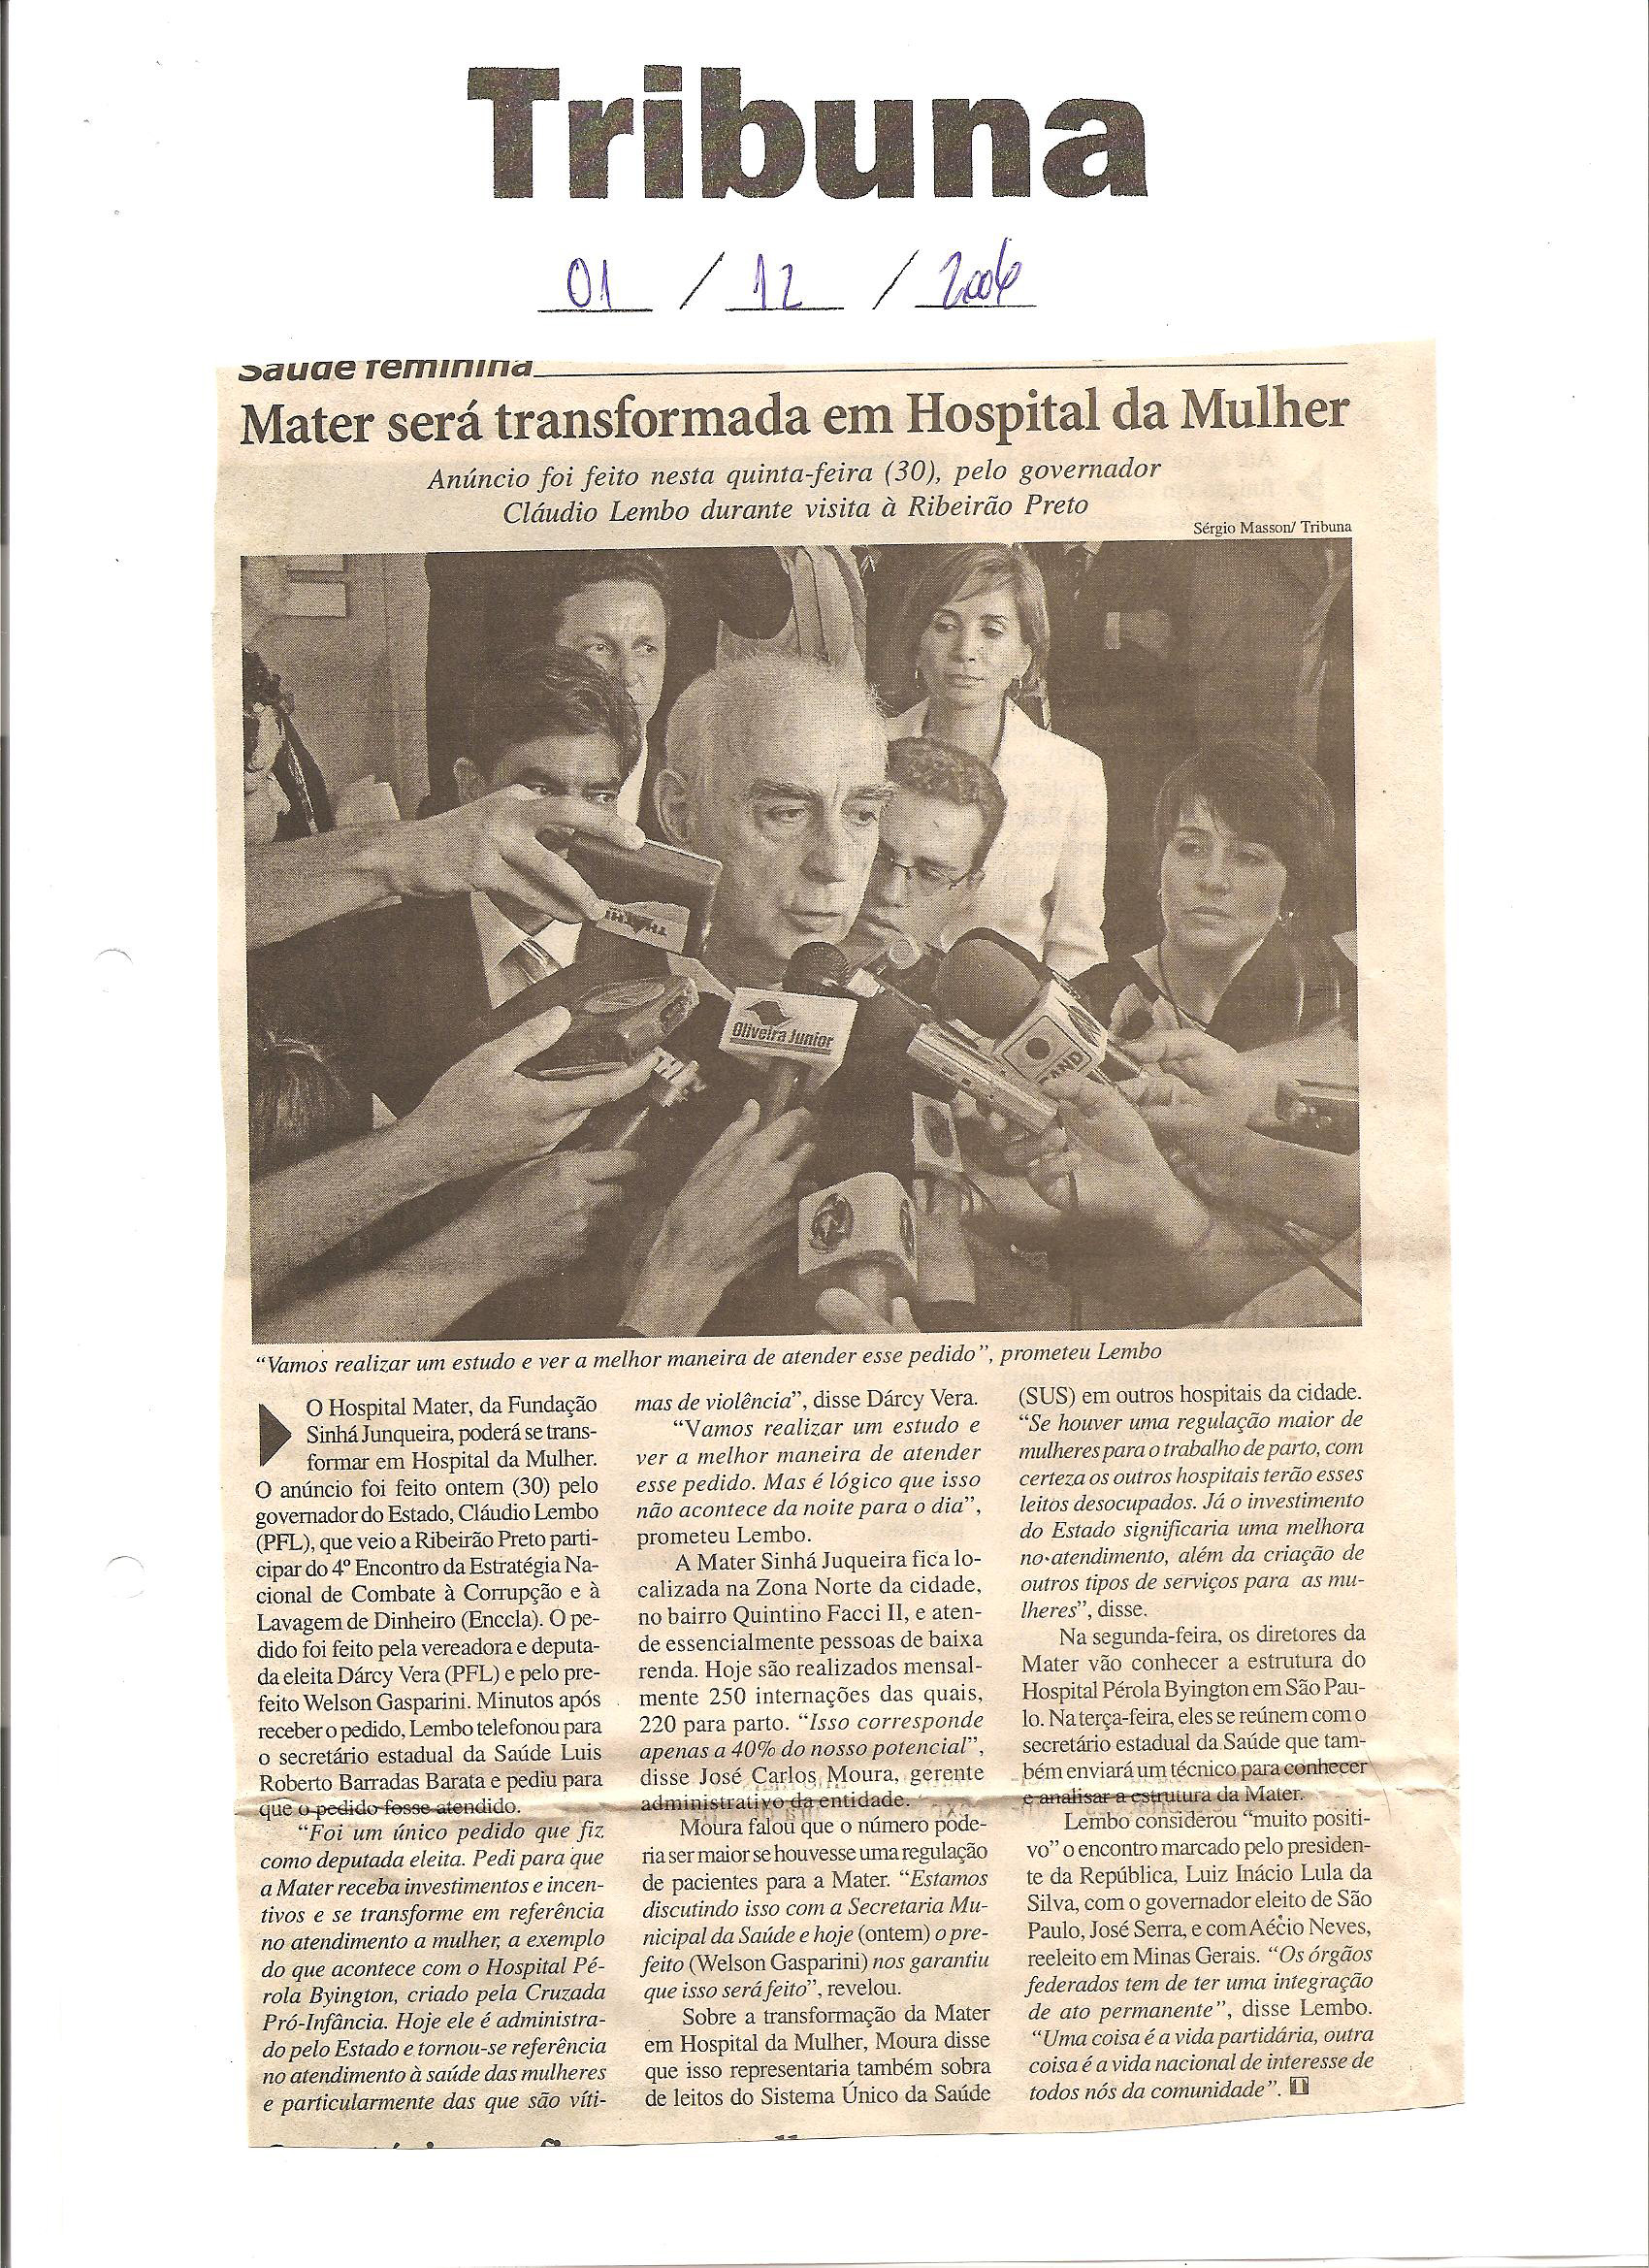 O jormal tribuna anunciou a transformao do Mater em Hospital da Mulher em final de dezembro<a style='float:right;color:#ccc' href='https://www3.al.sp.gov.br/repositorio/noticia/03-2008/DARCY VERA MATER.jpg' target=_blank><i class='bi bi-zoom-in'></i> Clique para ver a imagem </a>